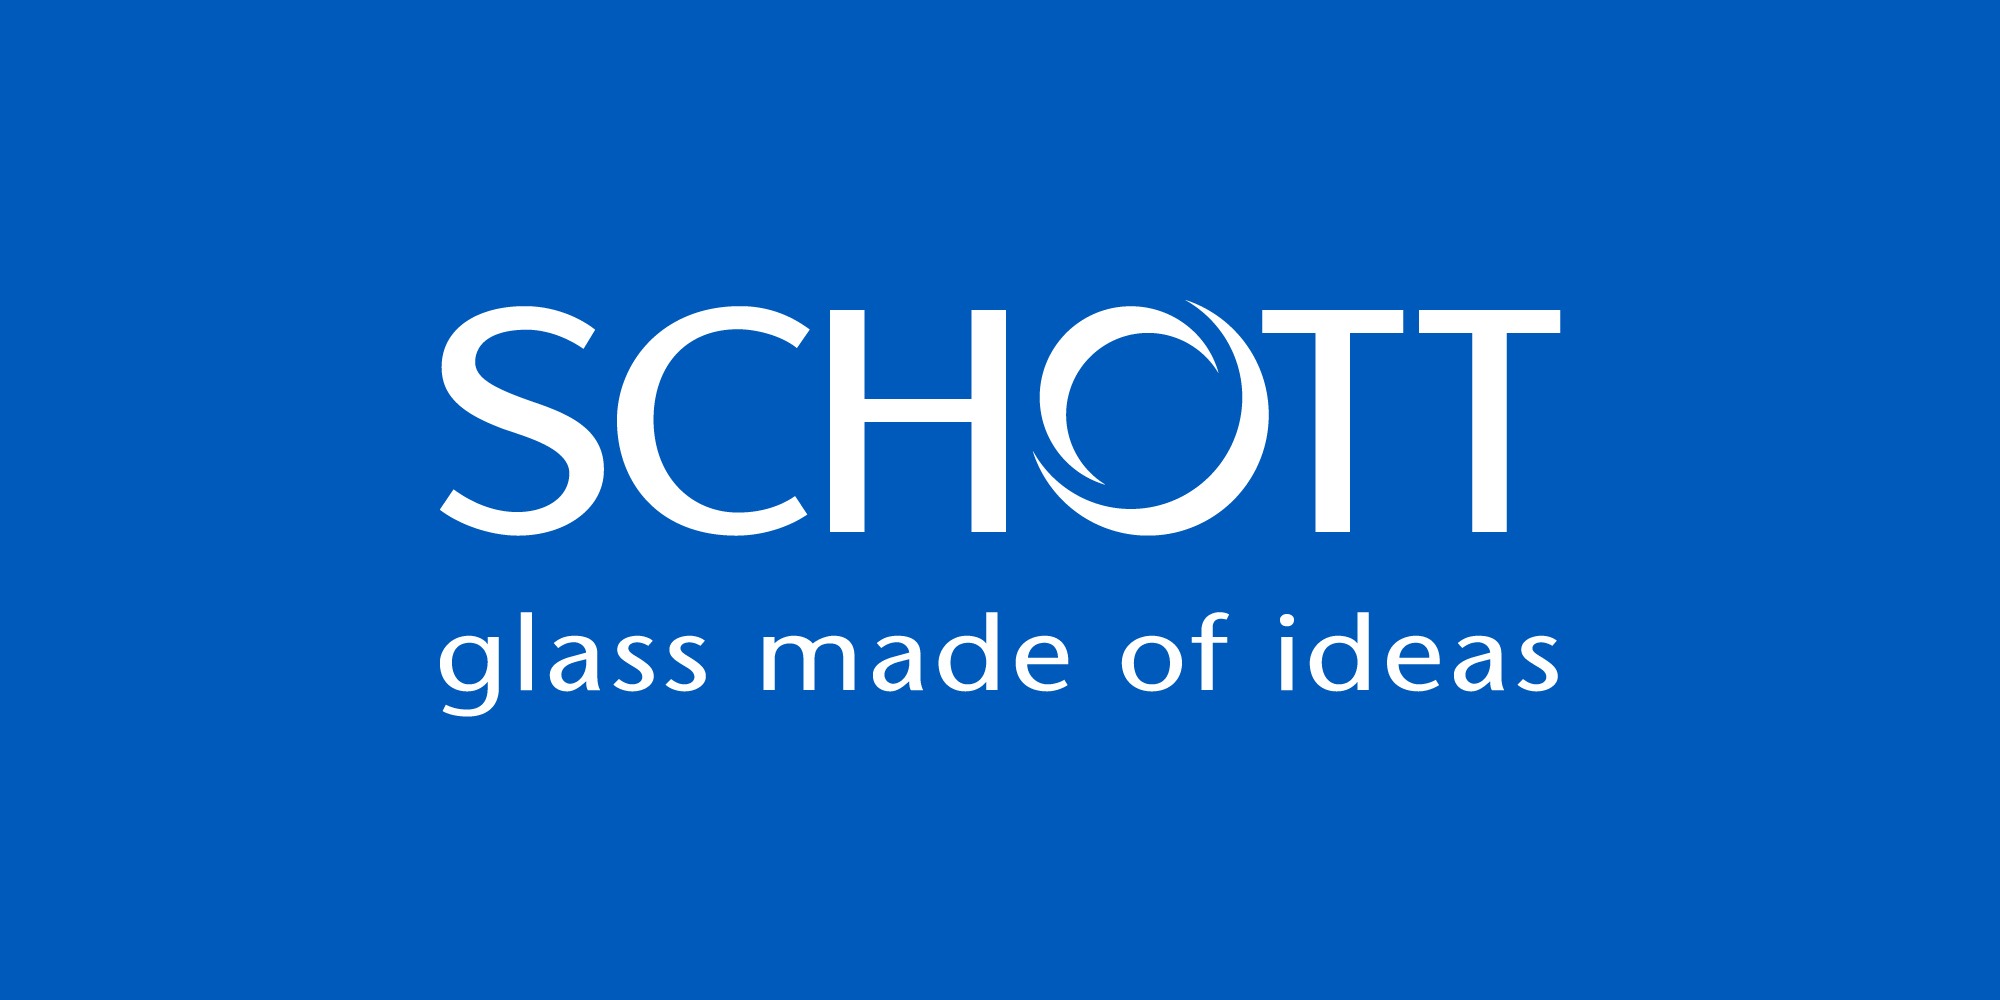 Logo Schott AG